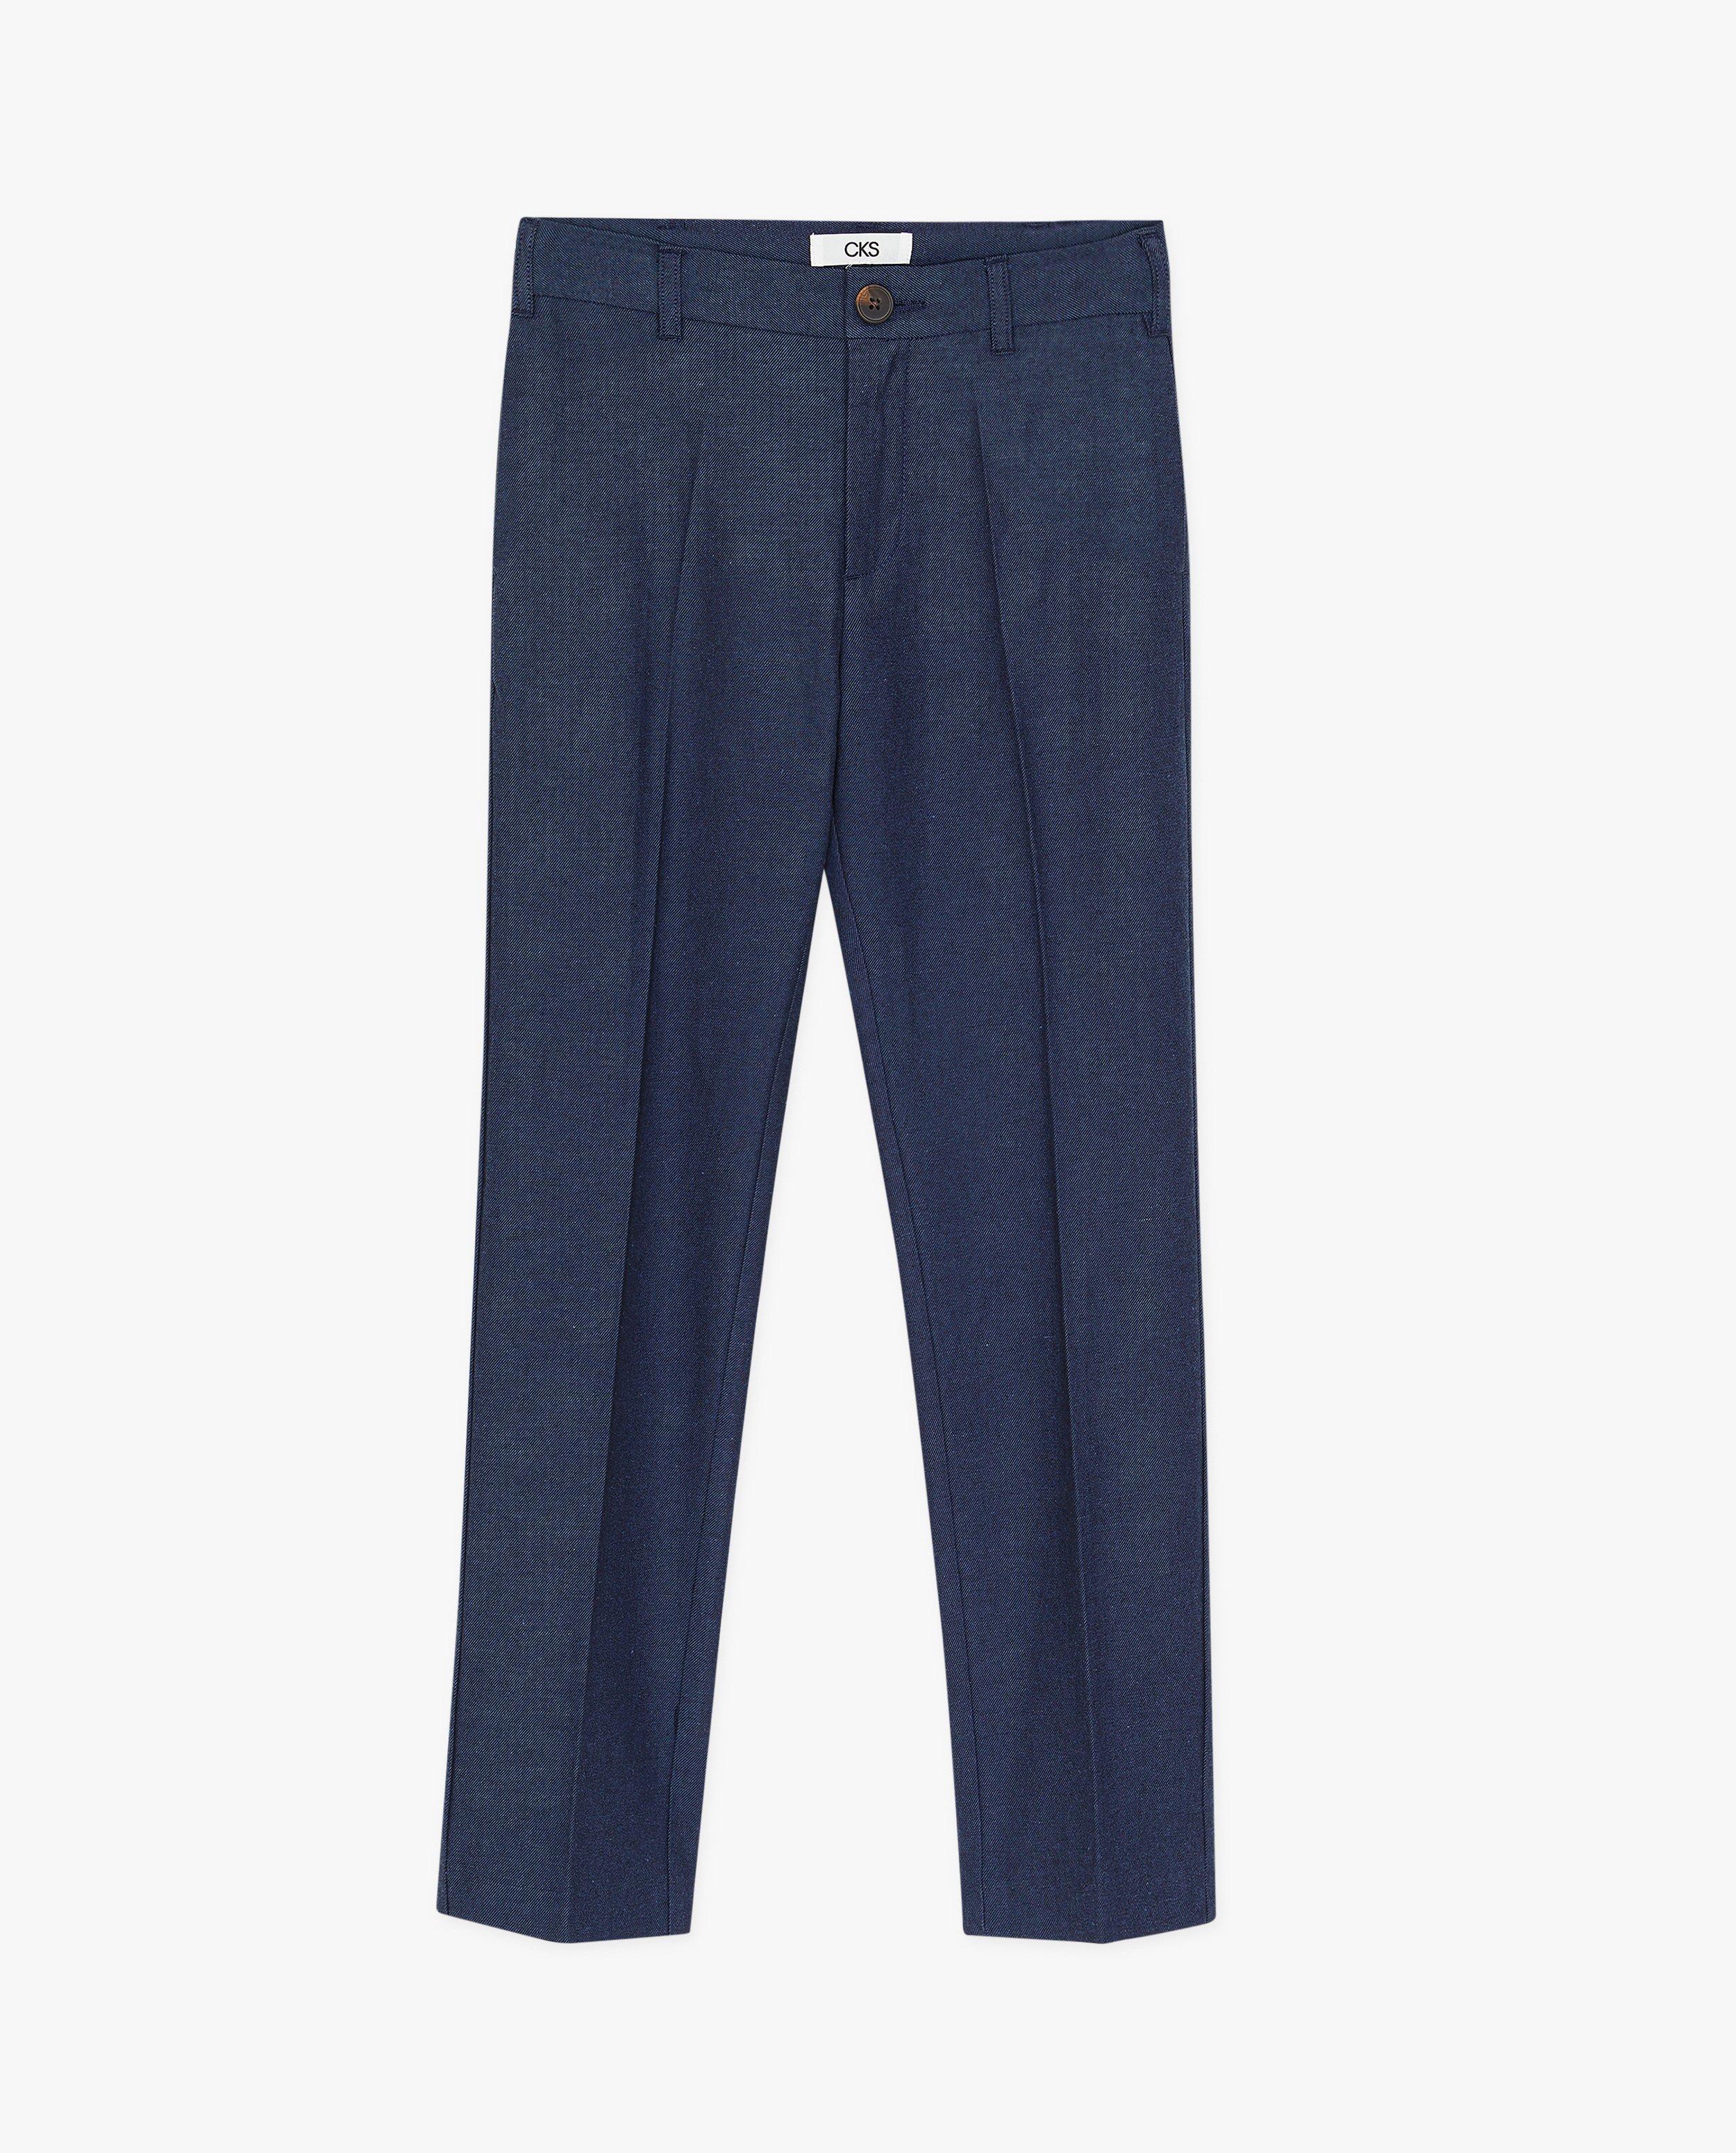 Pantalons - Pantalon bleu, Communion